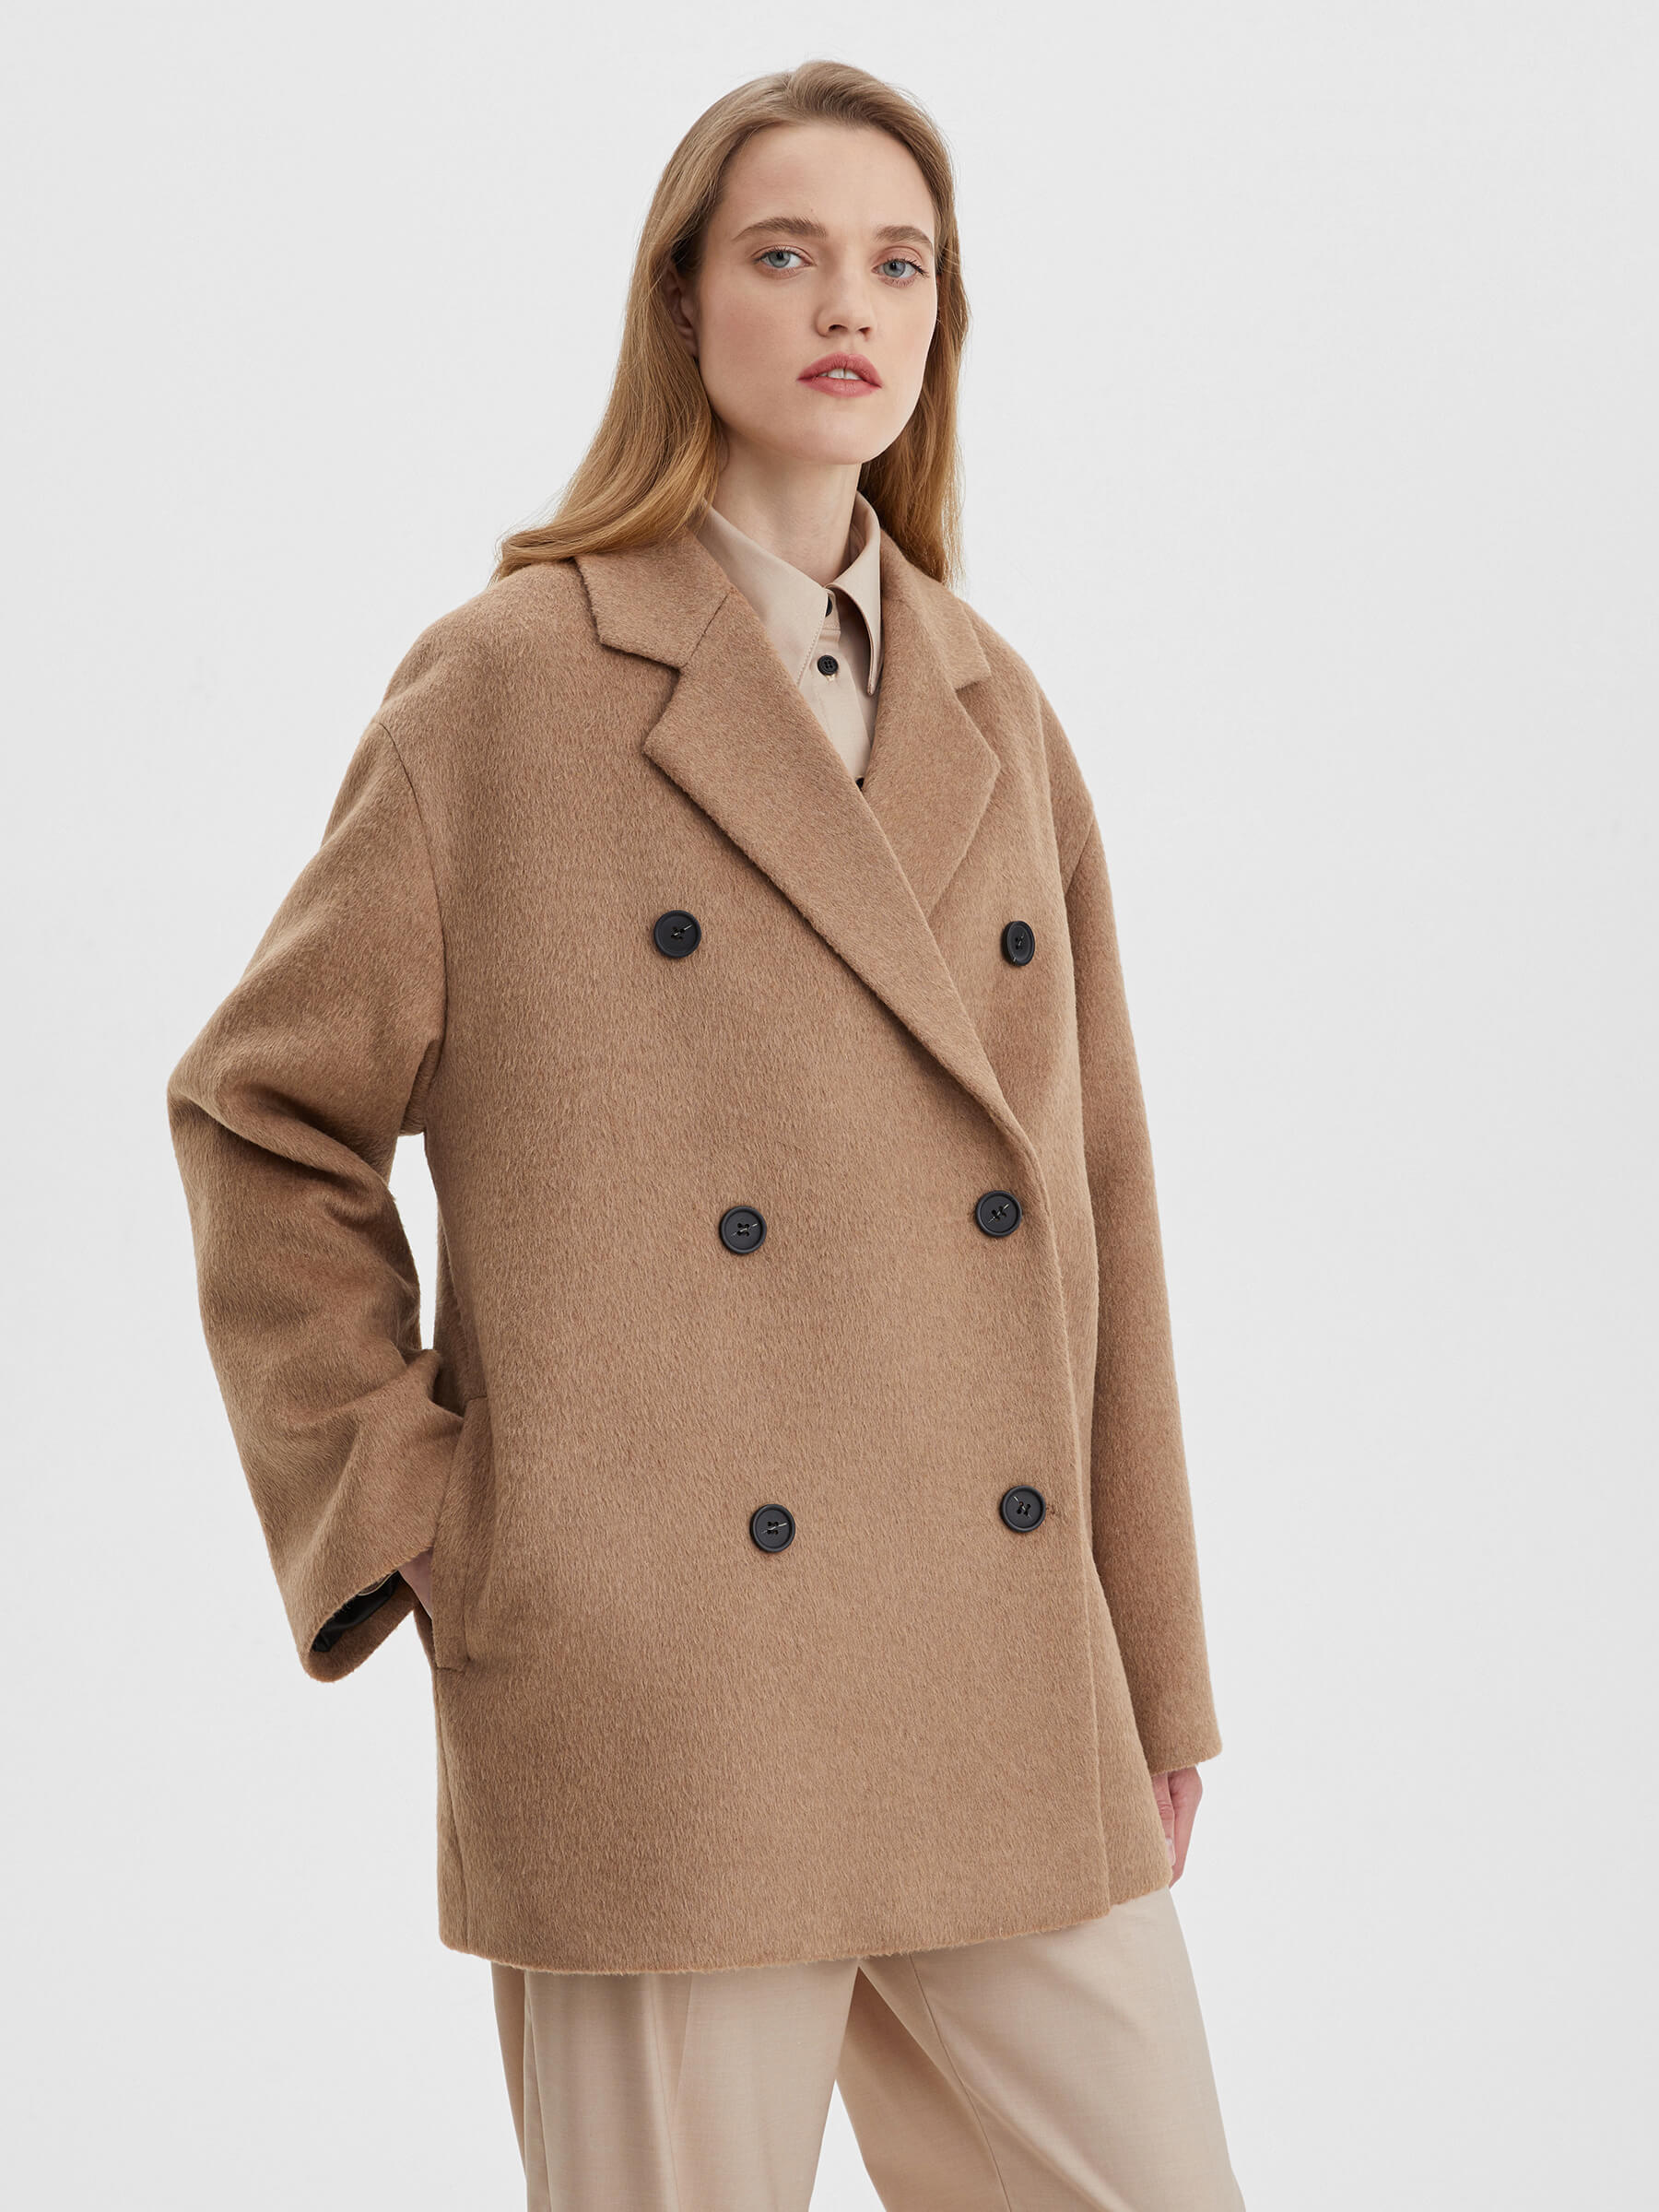 Пальто женское двубортное укороченное, цвет – коричневый